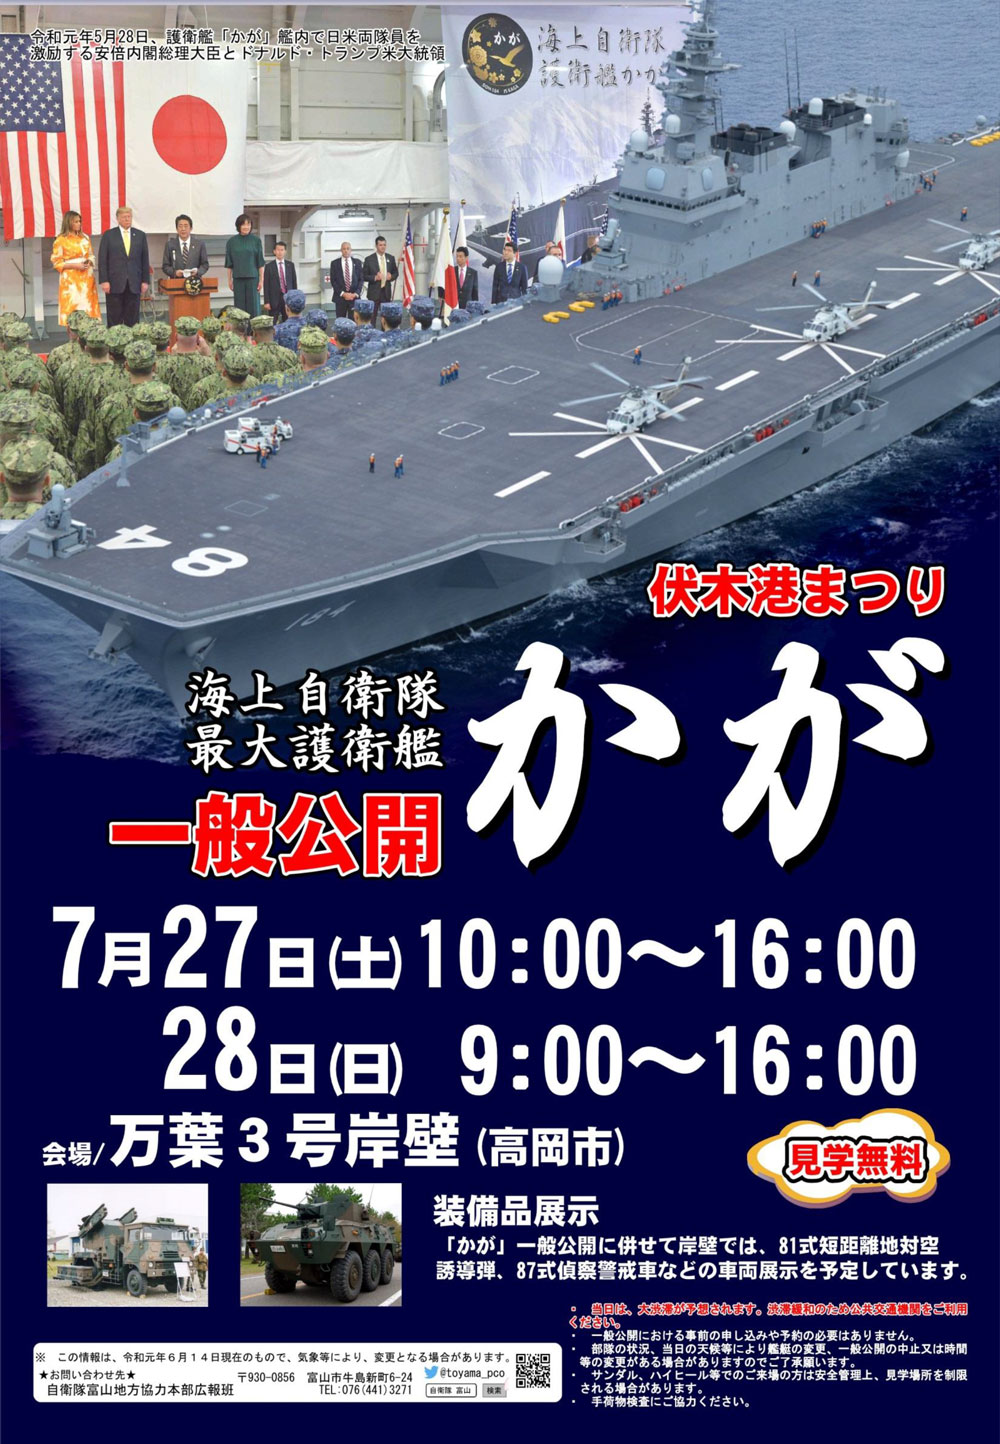 【海上自衛隊最大護衛艦かが 富山】伏木港まつり2019で一般公開！万葉3号壁岸